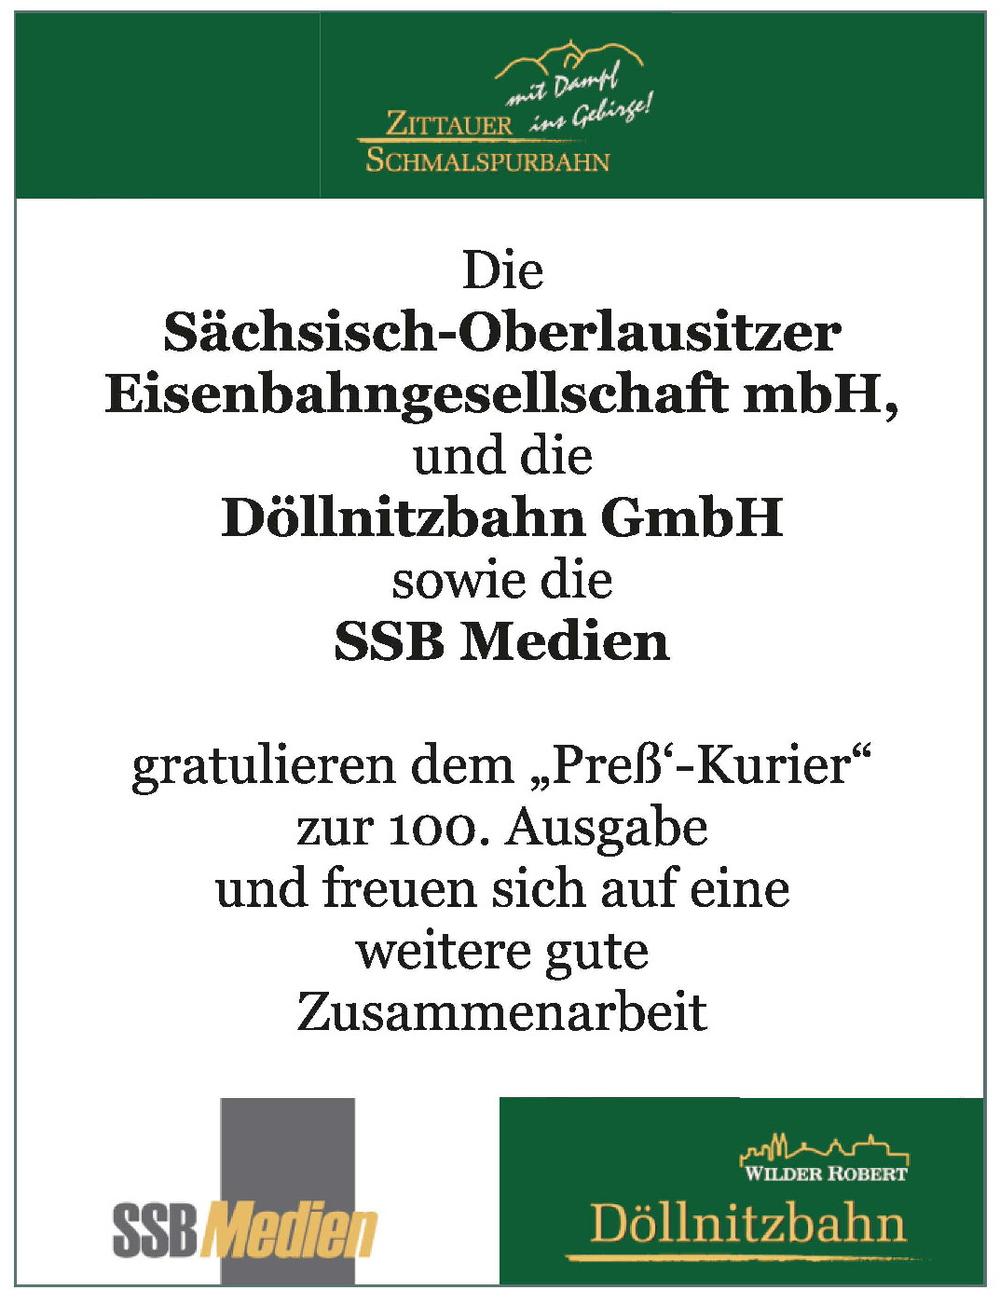 Gruss von SOEG, Döllnitzbahn und SSB Medien.